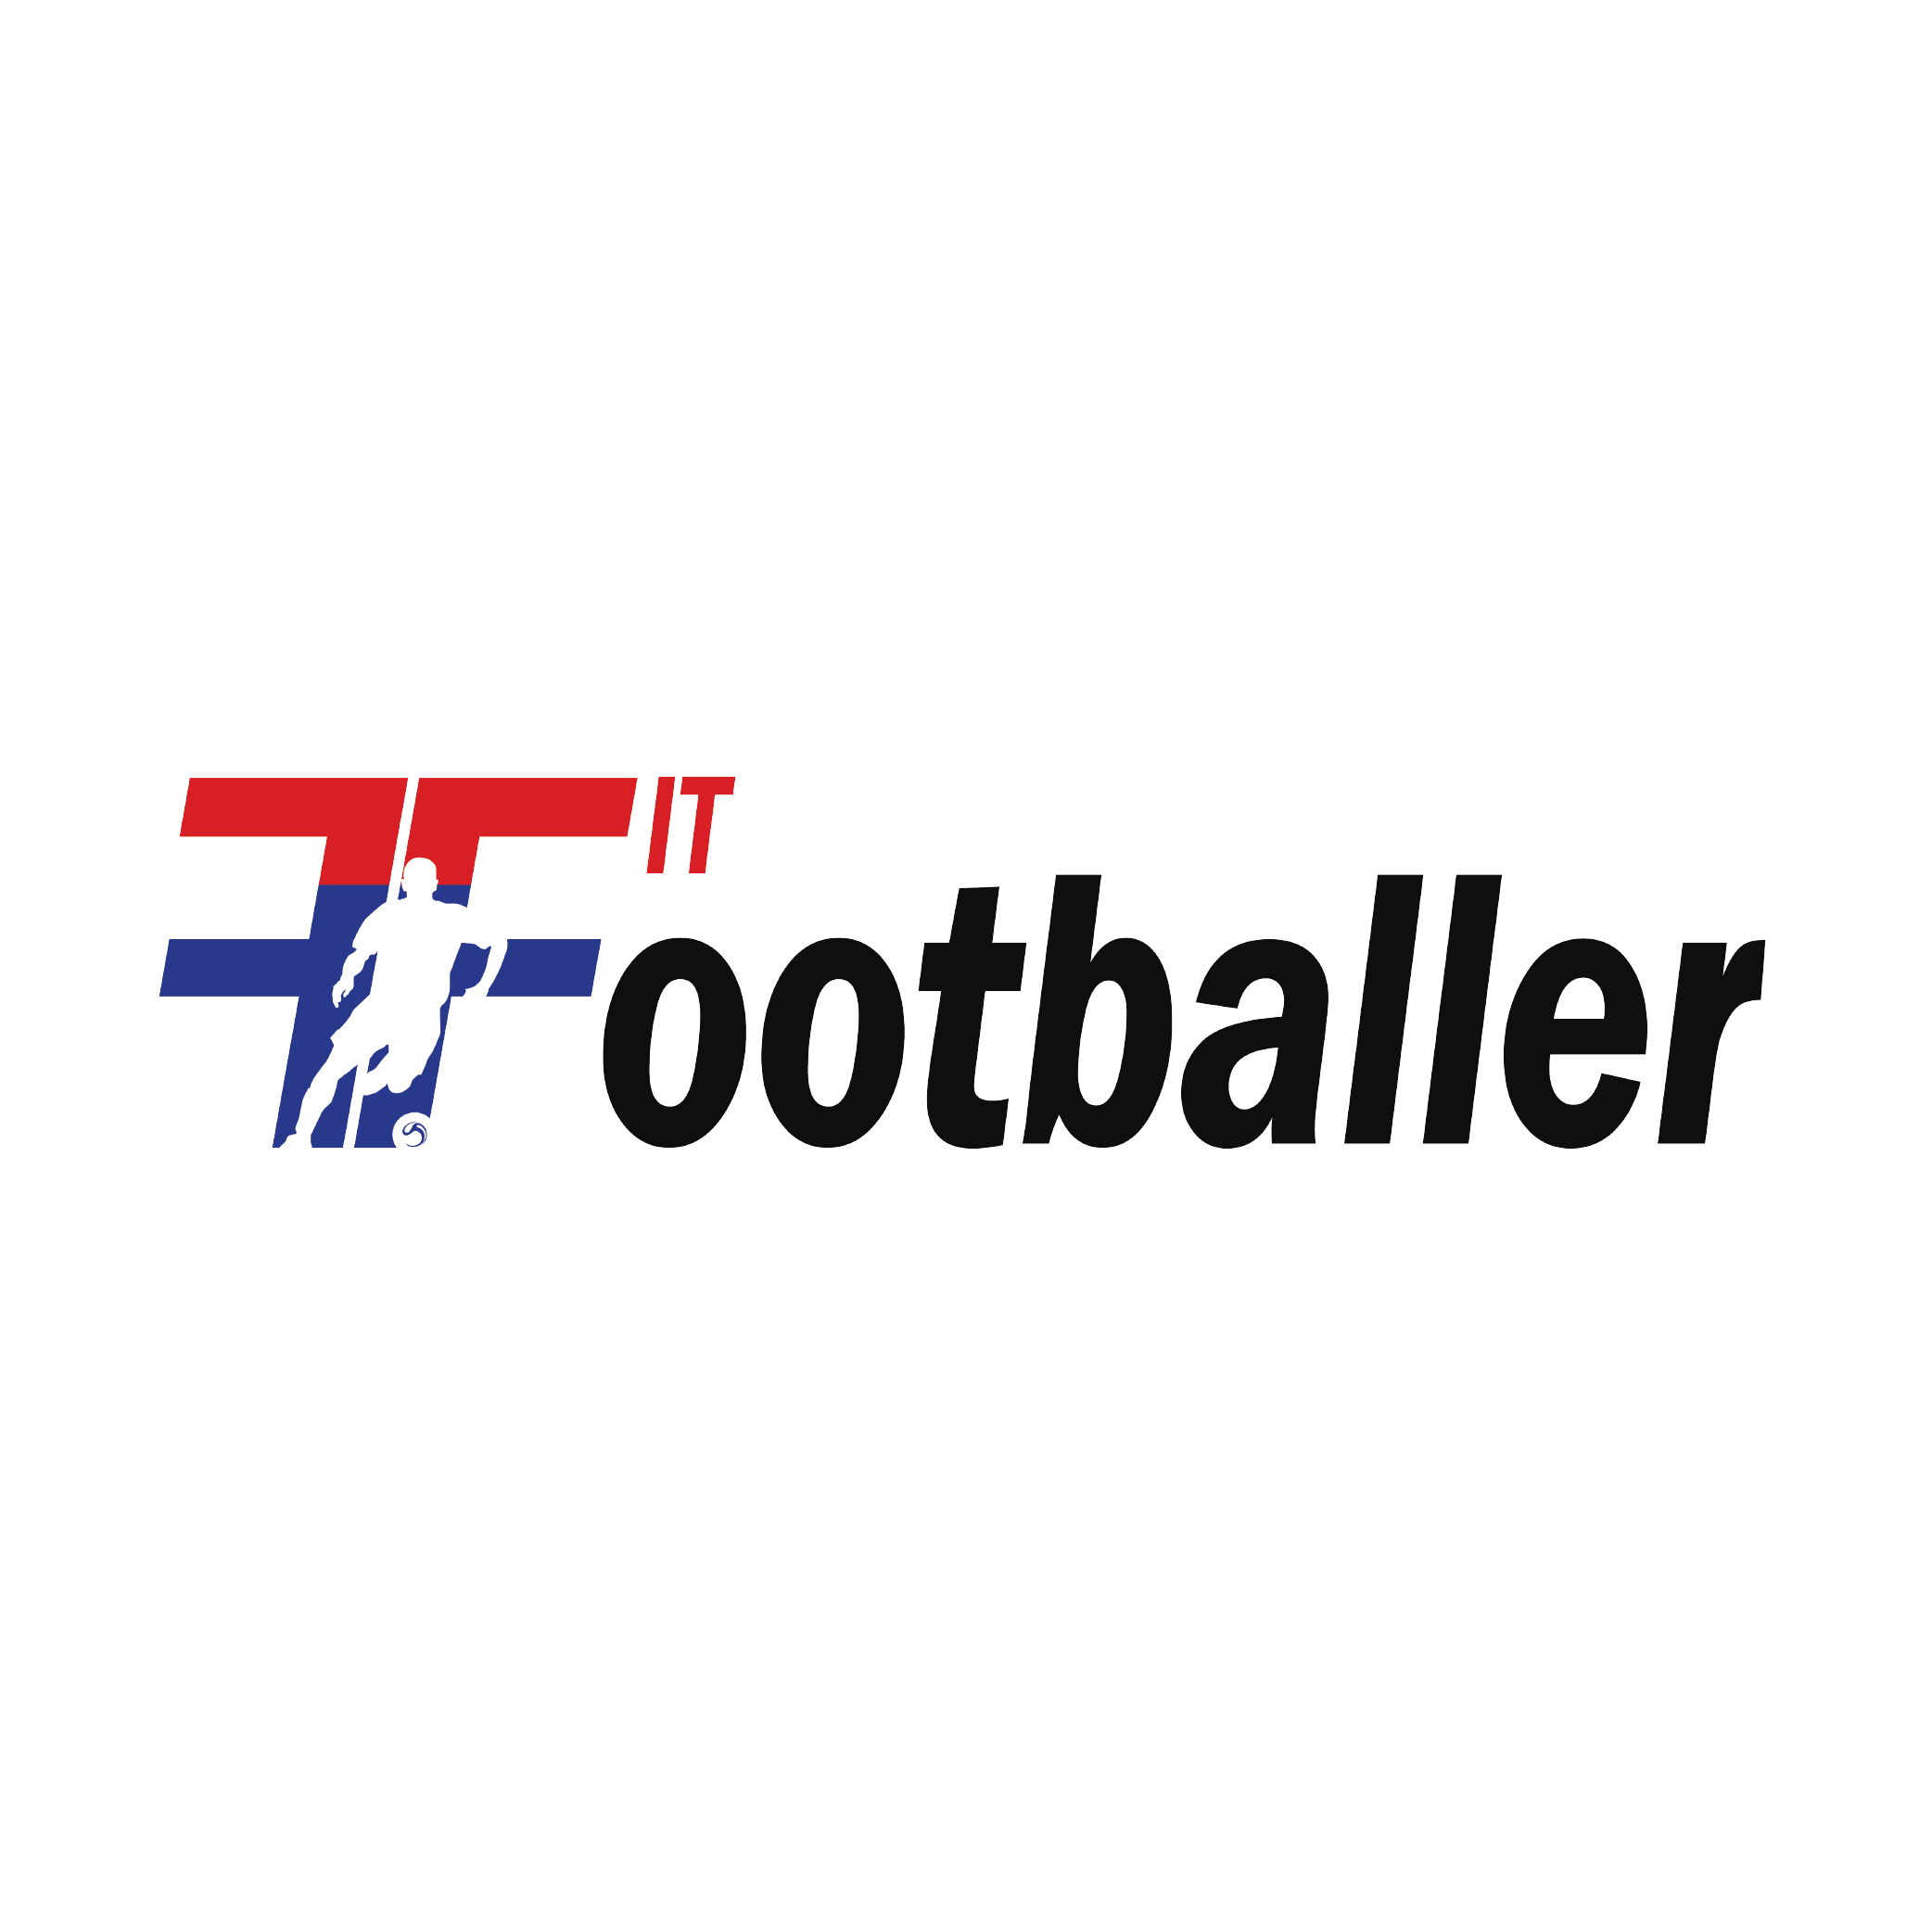 Fit Footballer | Peri Peri Creative Client Portfolio